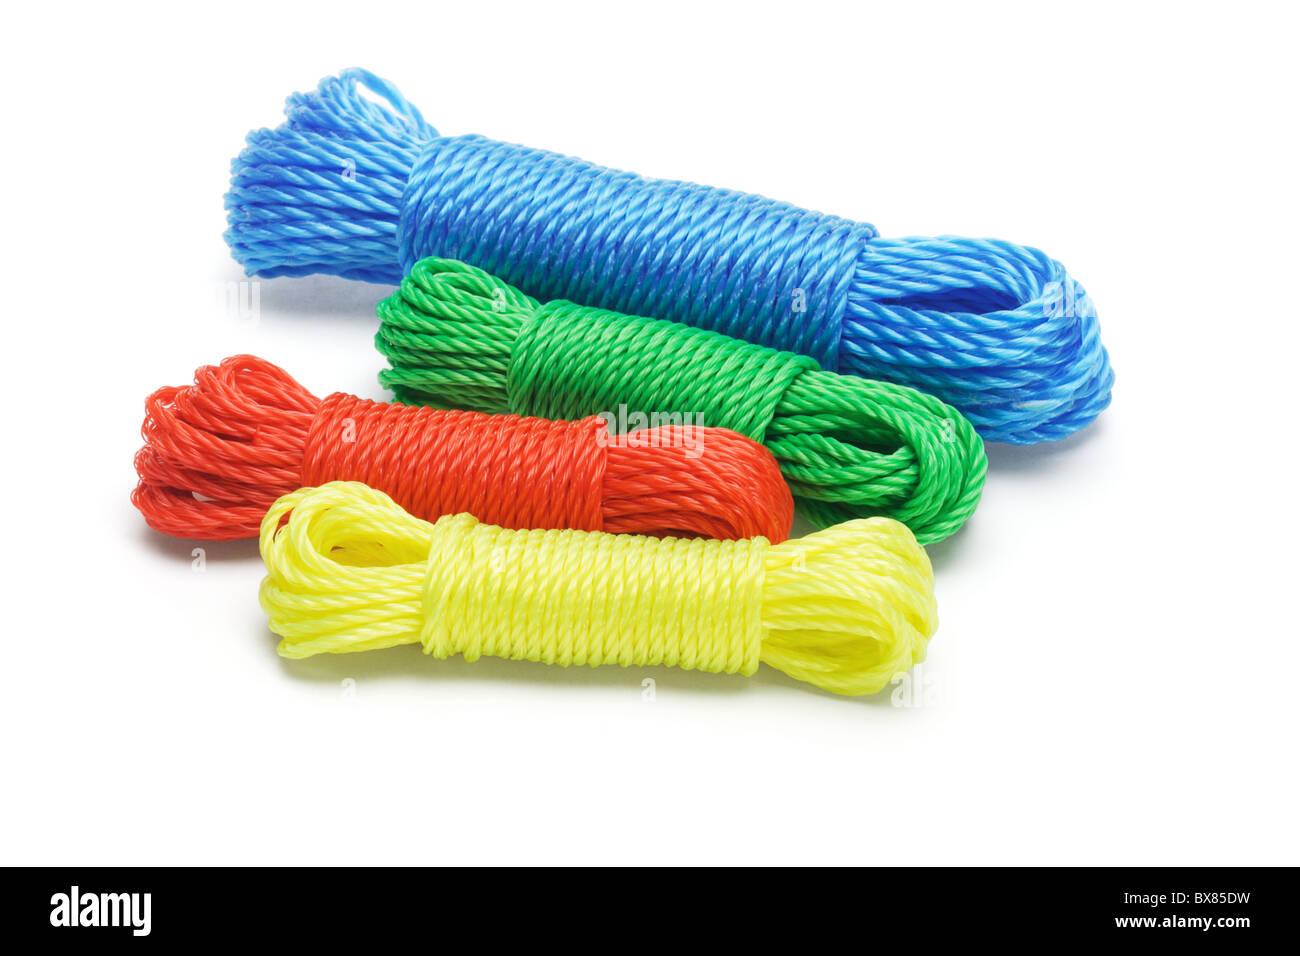 Des paquets de cordes en nylon coloré sur fond blanc Banque D'Images